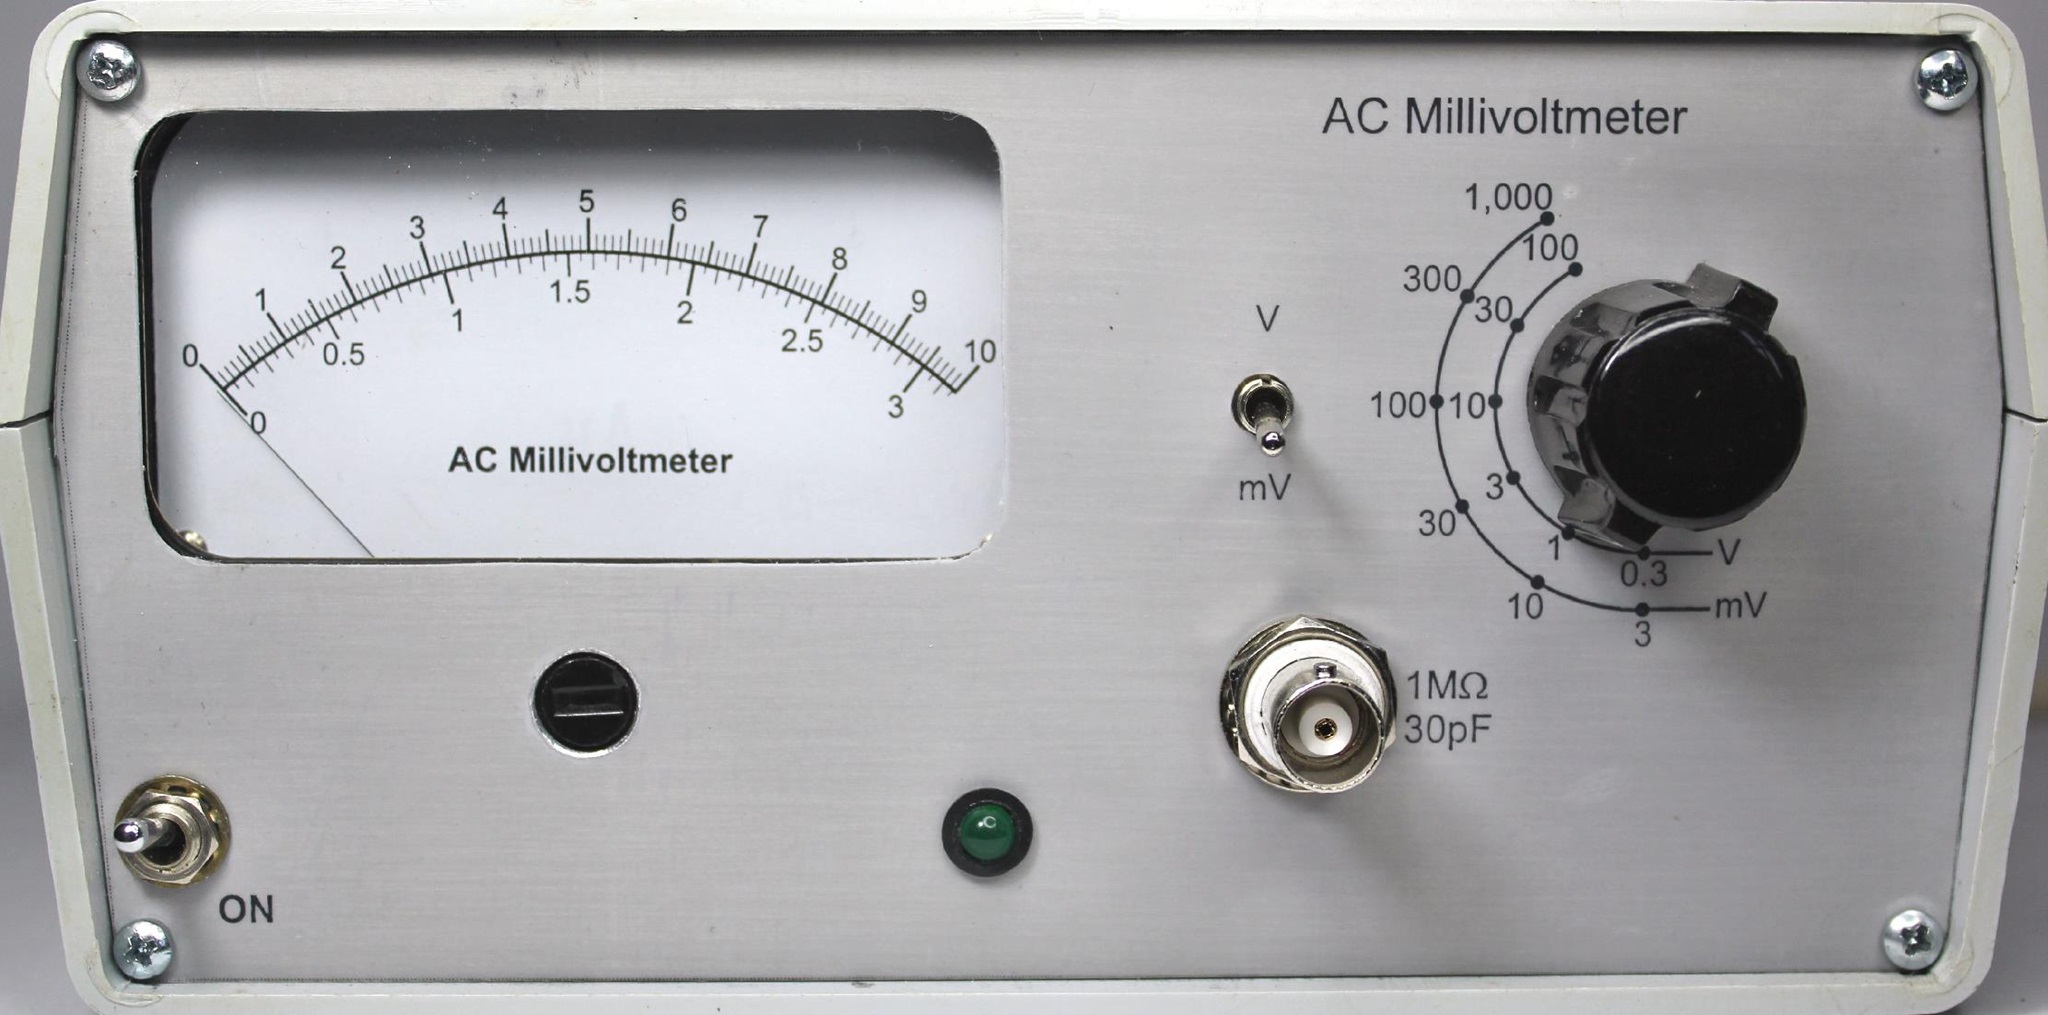 ac millivoltmeter schematic